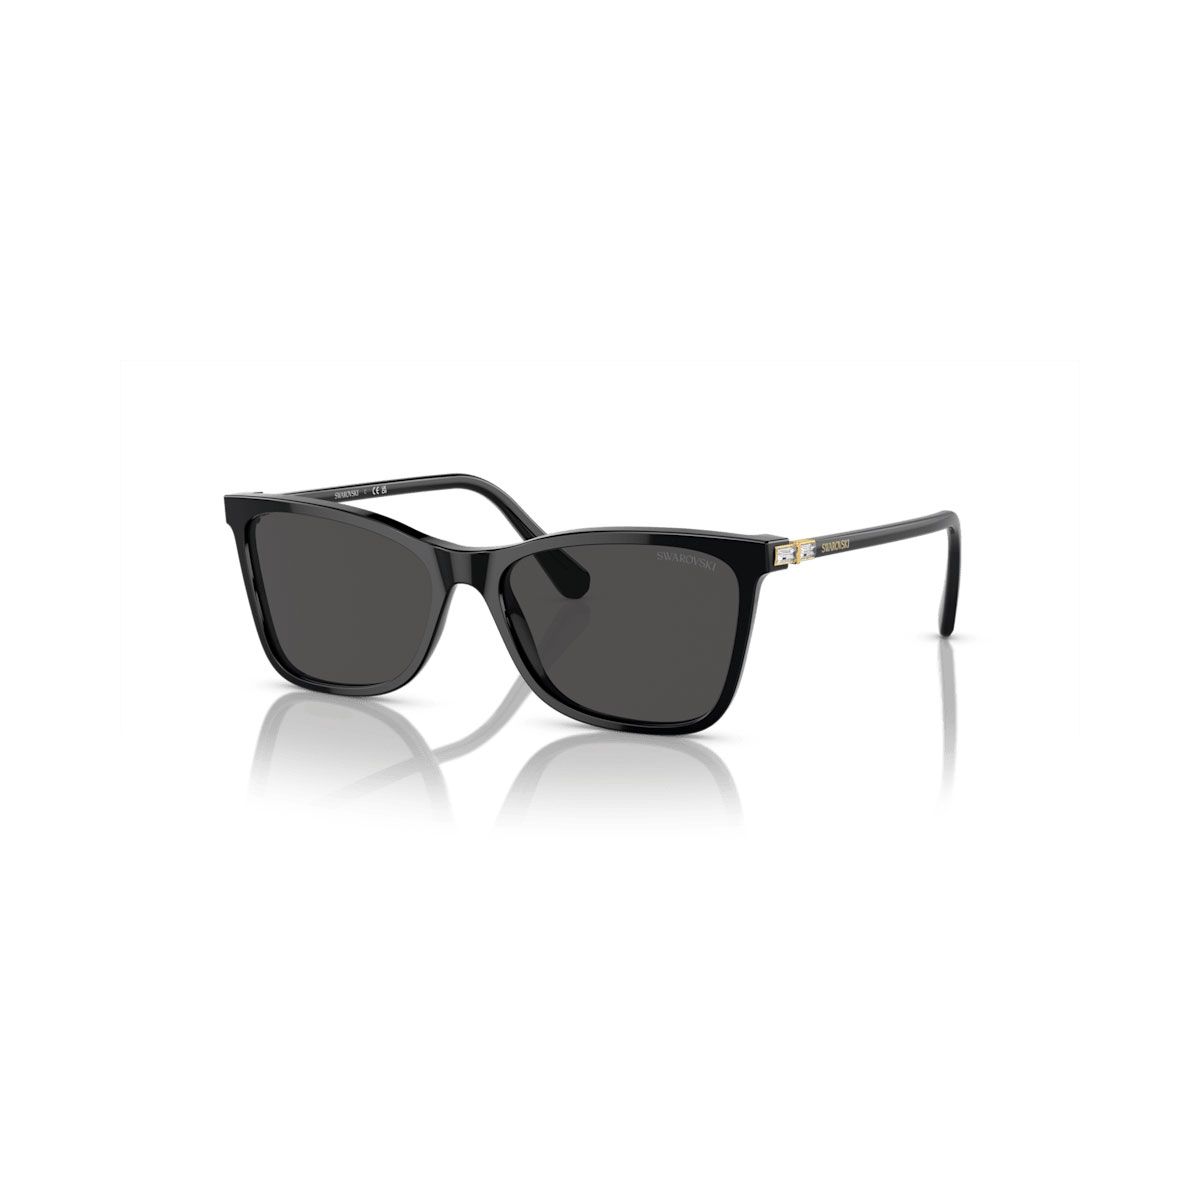 Swarovski Sunglasses, Square shape, Black